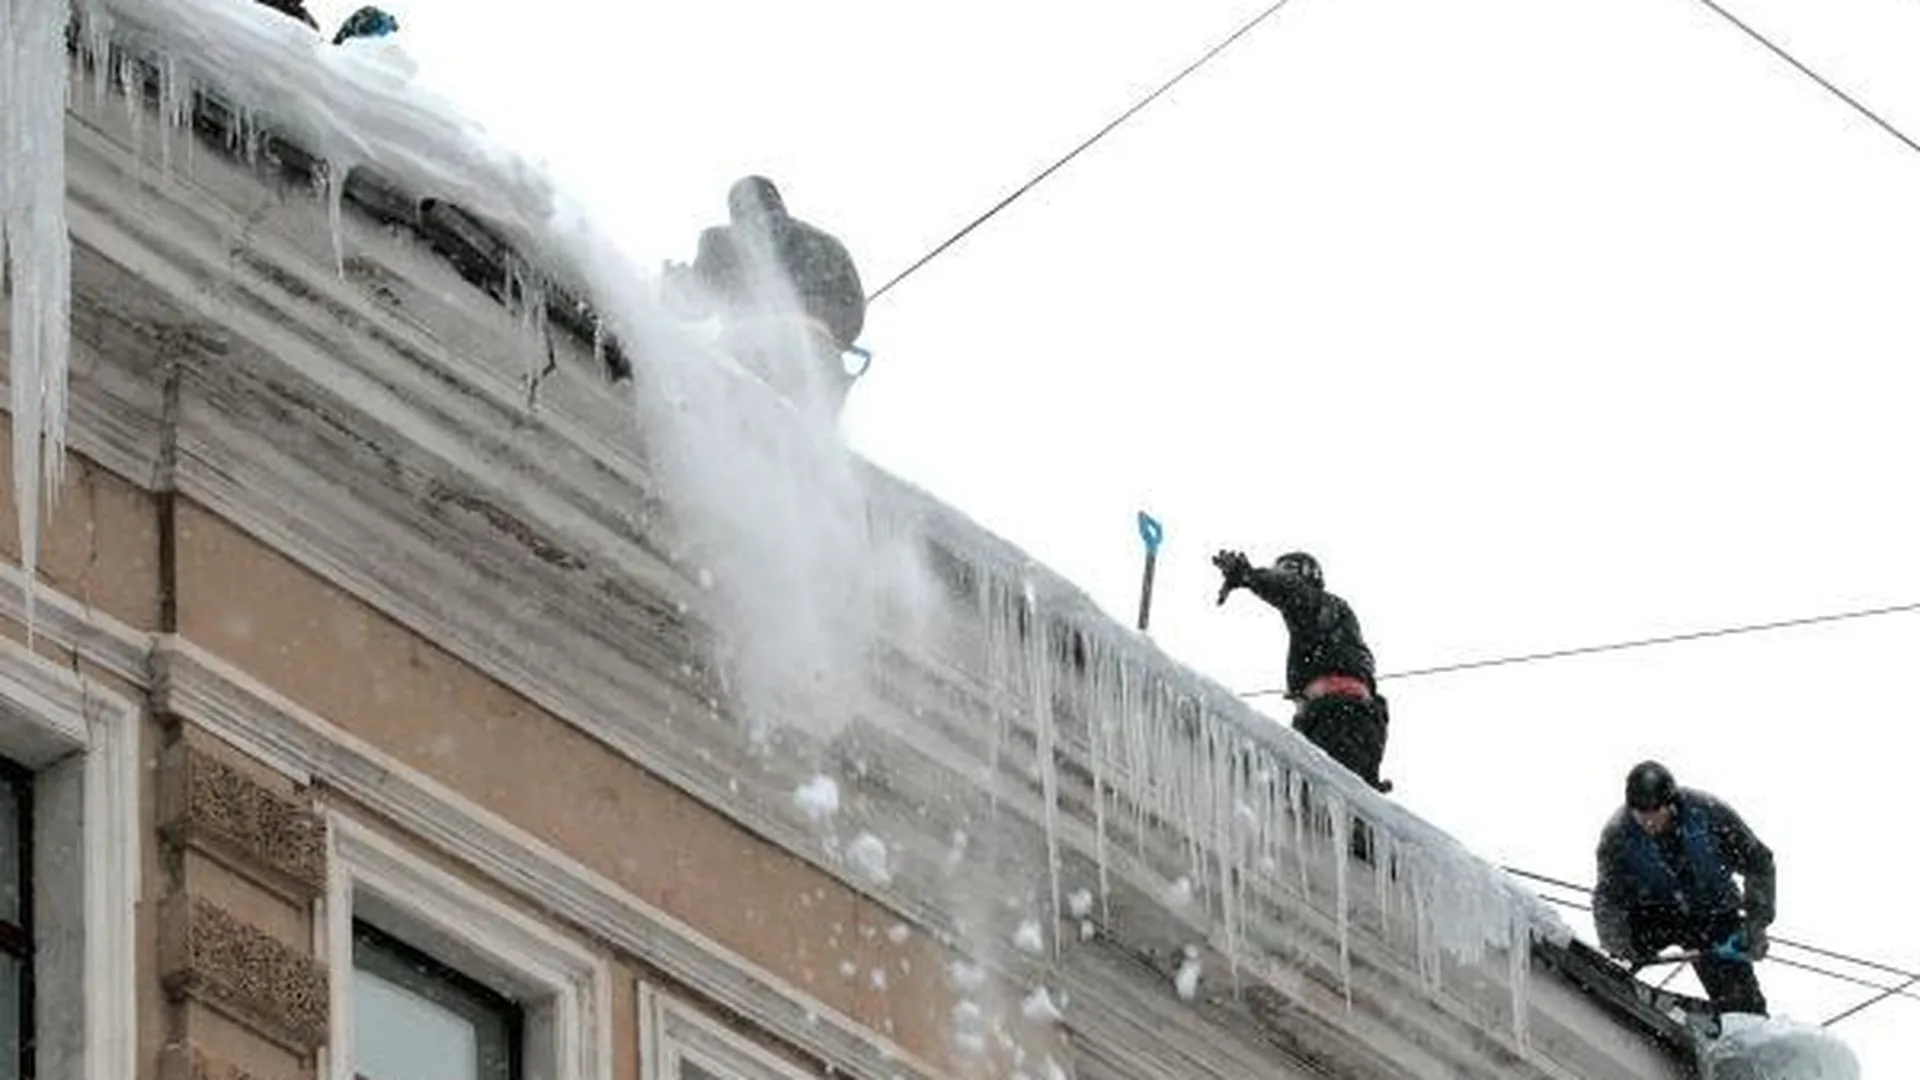 Супруг спас девушку при падении на нее гигантской ледяной глыбы в Подольске